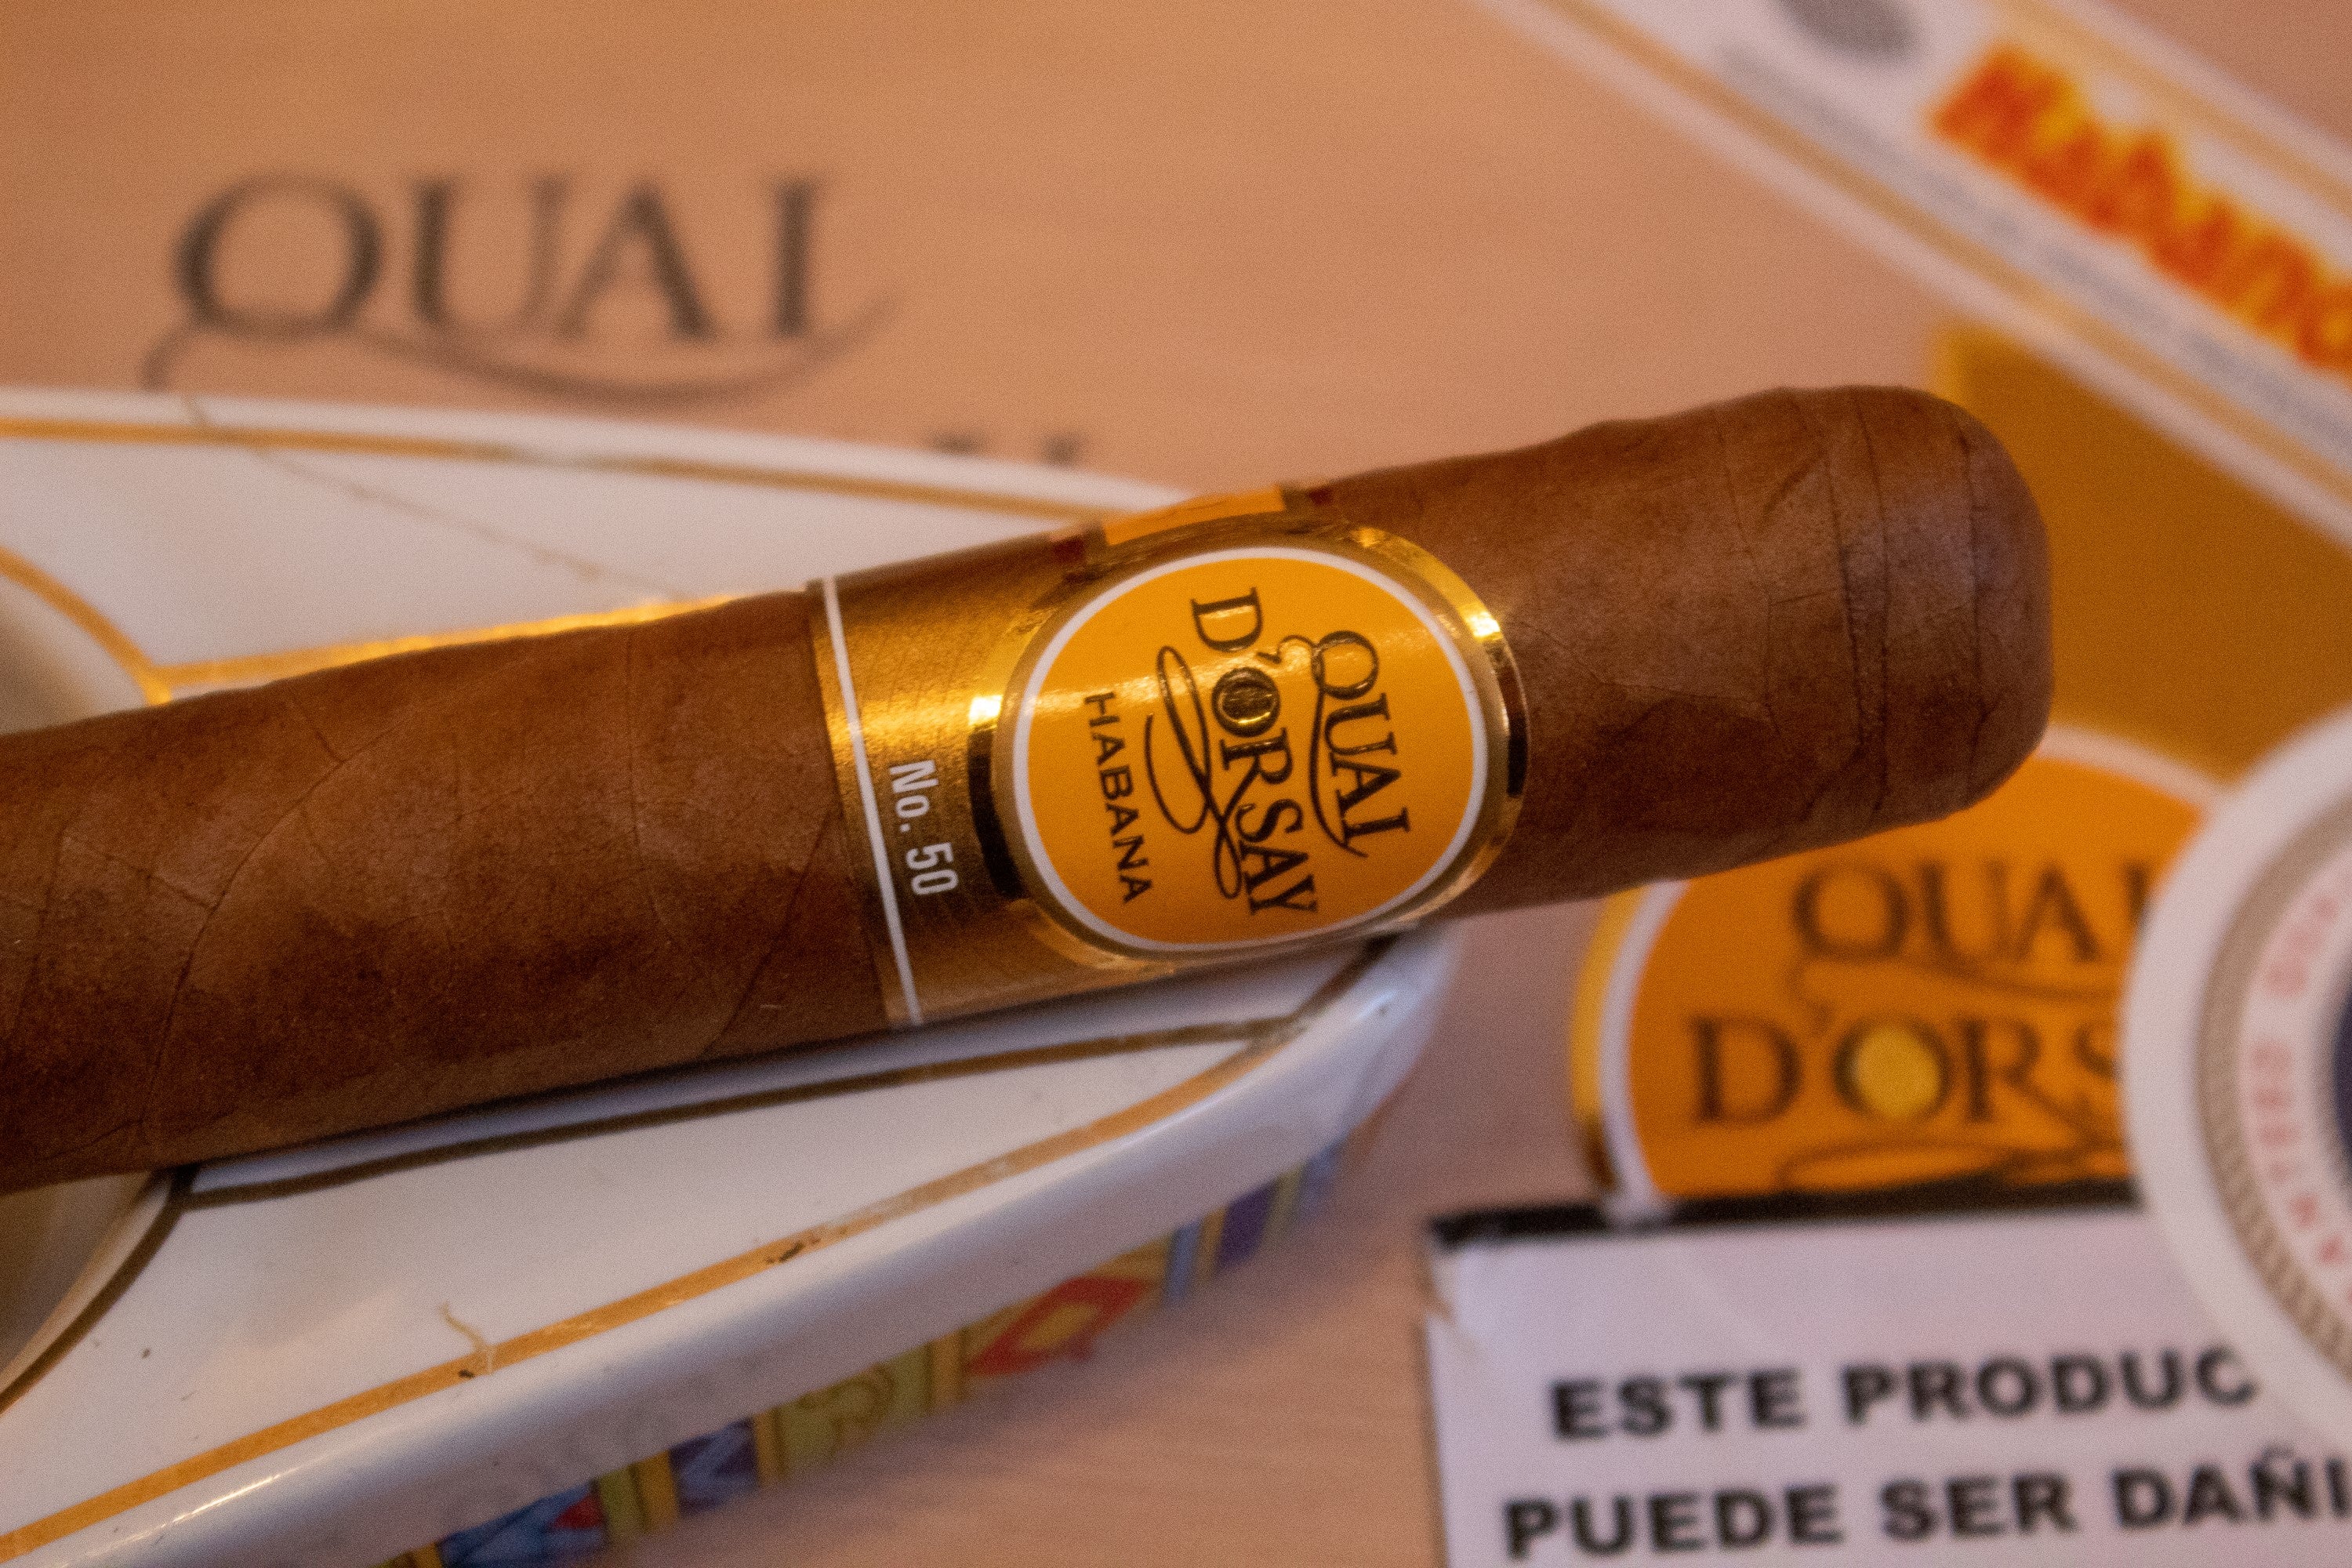 The Quai d'Orsay No. 50 Cuban cigar